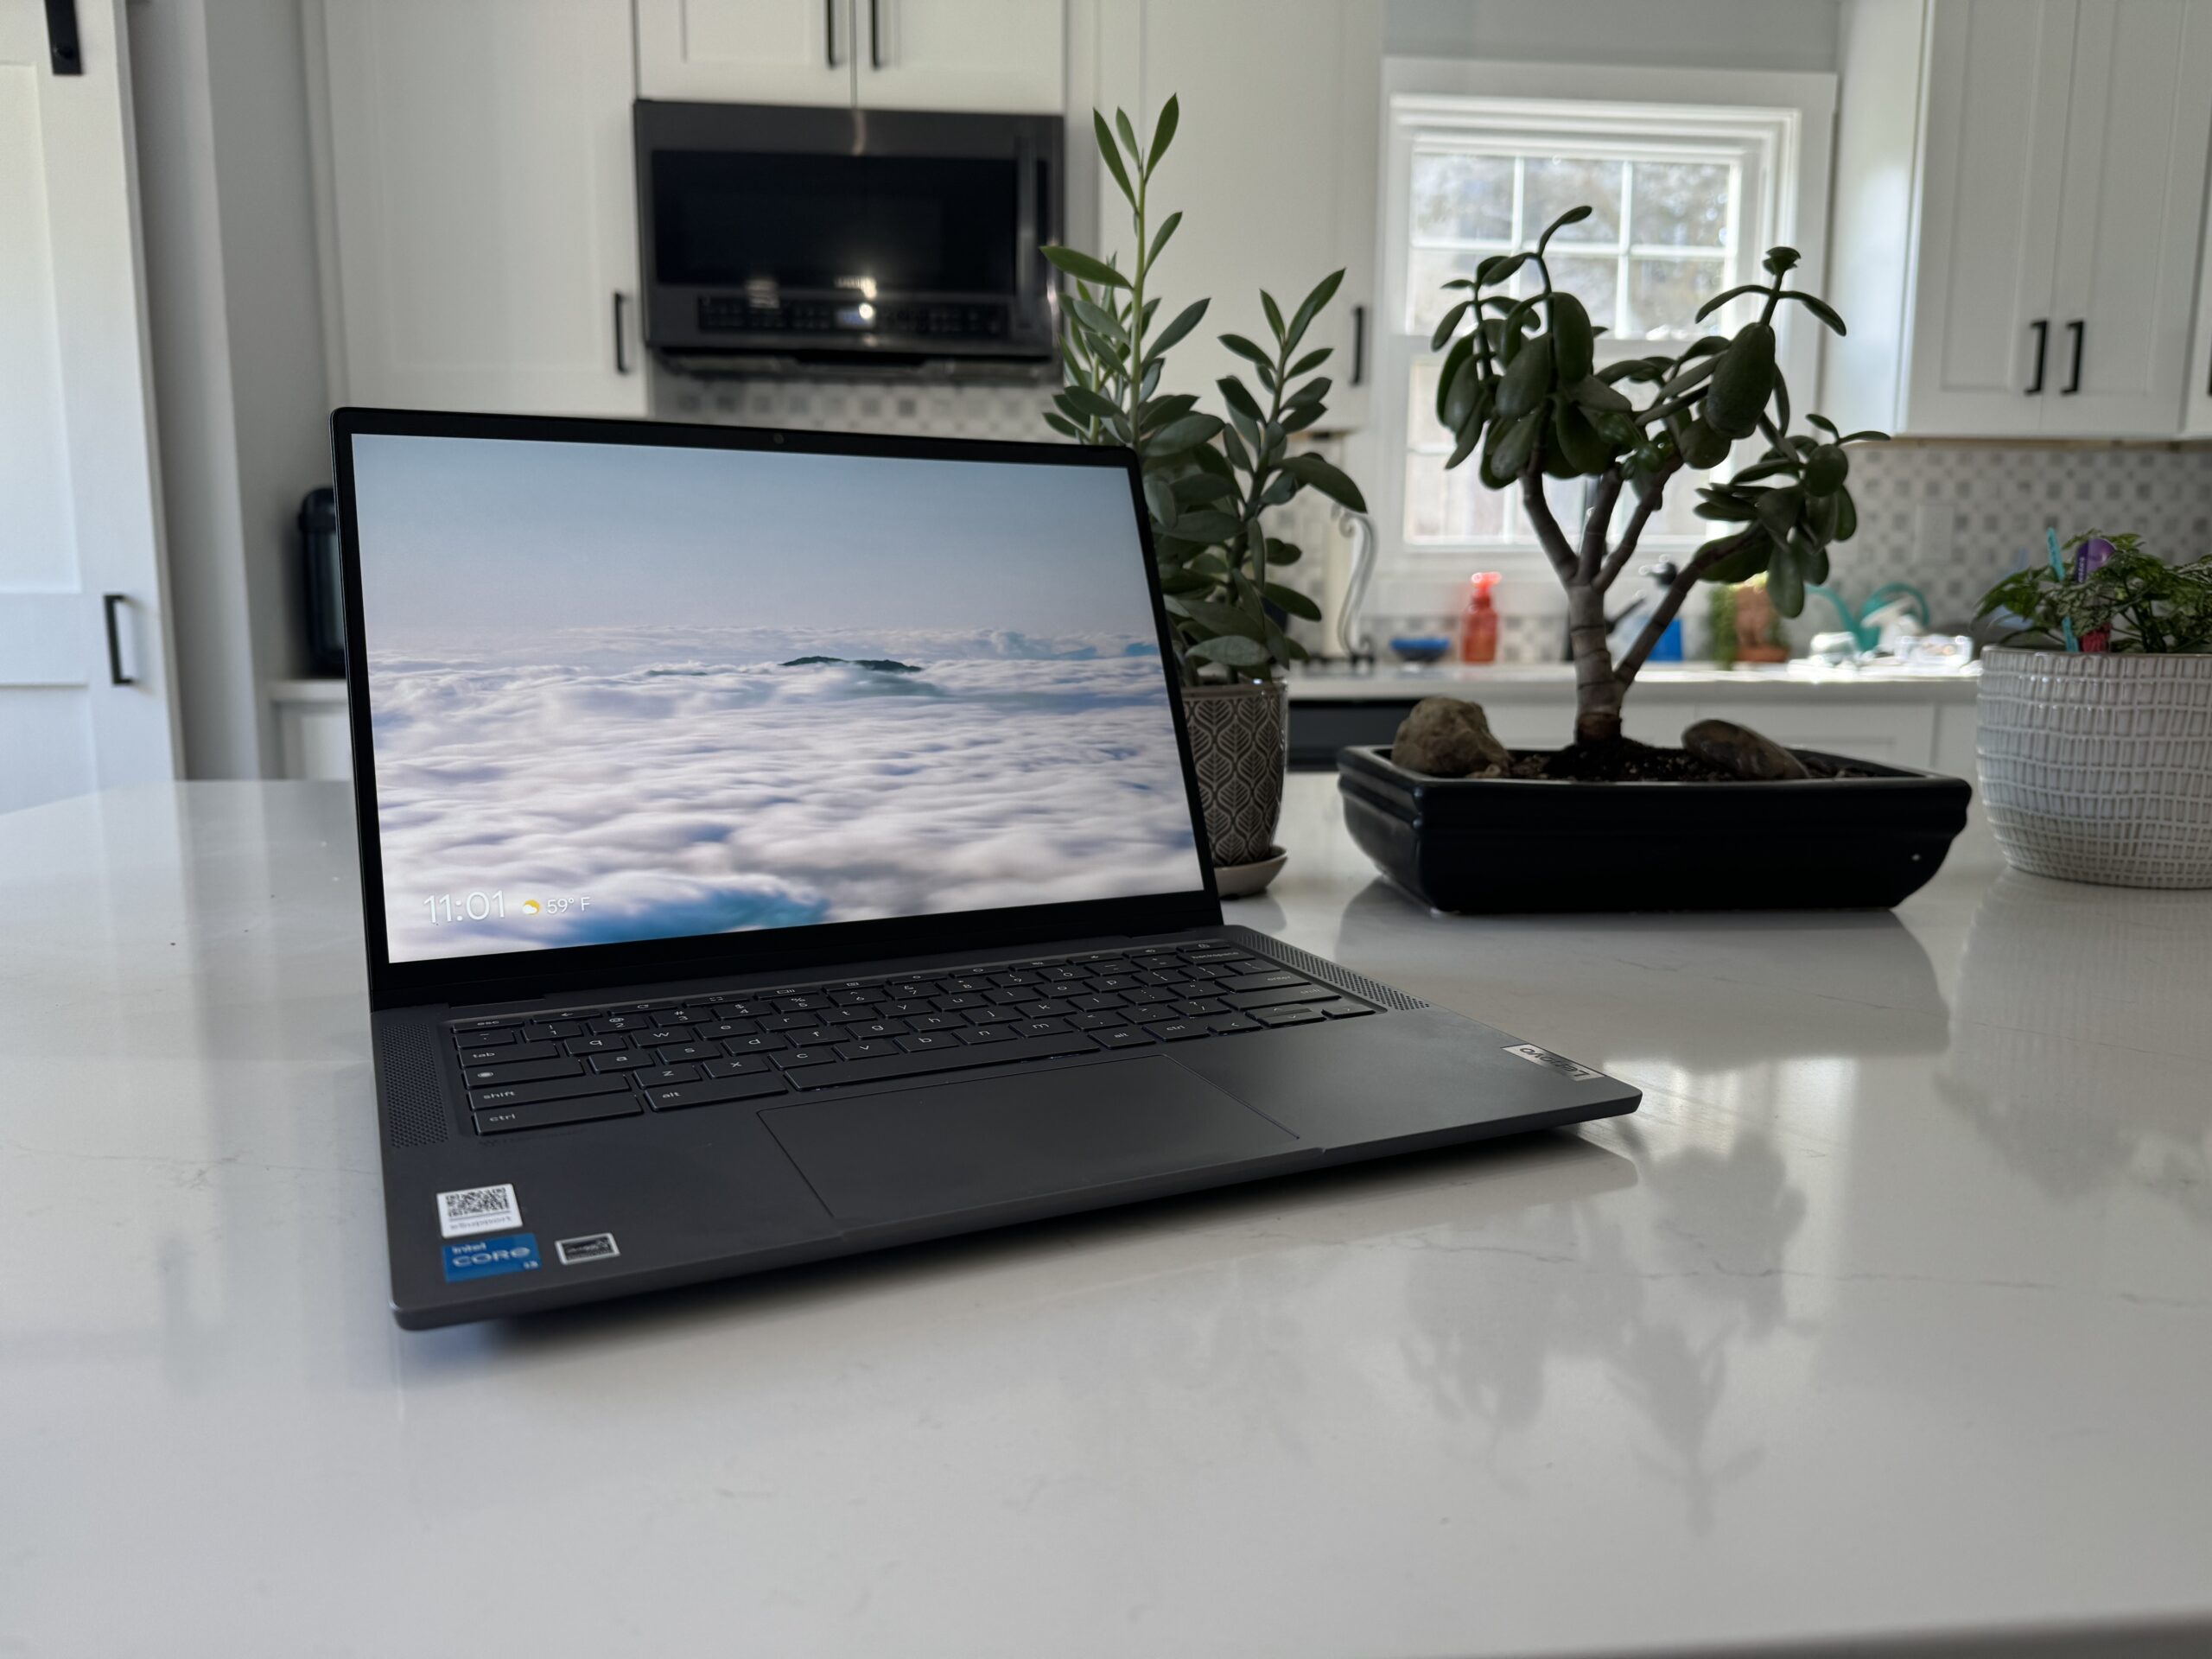 Lenovo IdeaPad Flex 5i Chromebook Plus: The best $499 ChromeOS laptop I’ve used